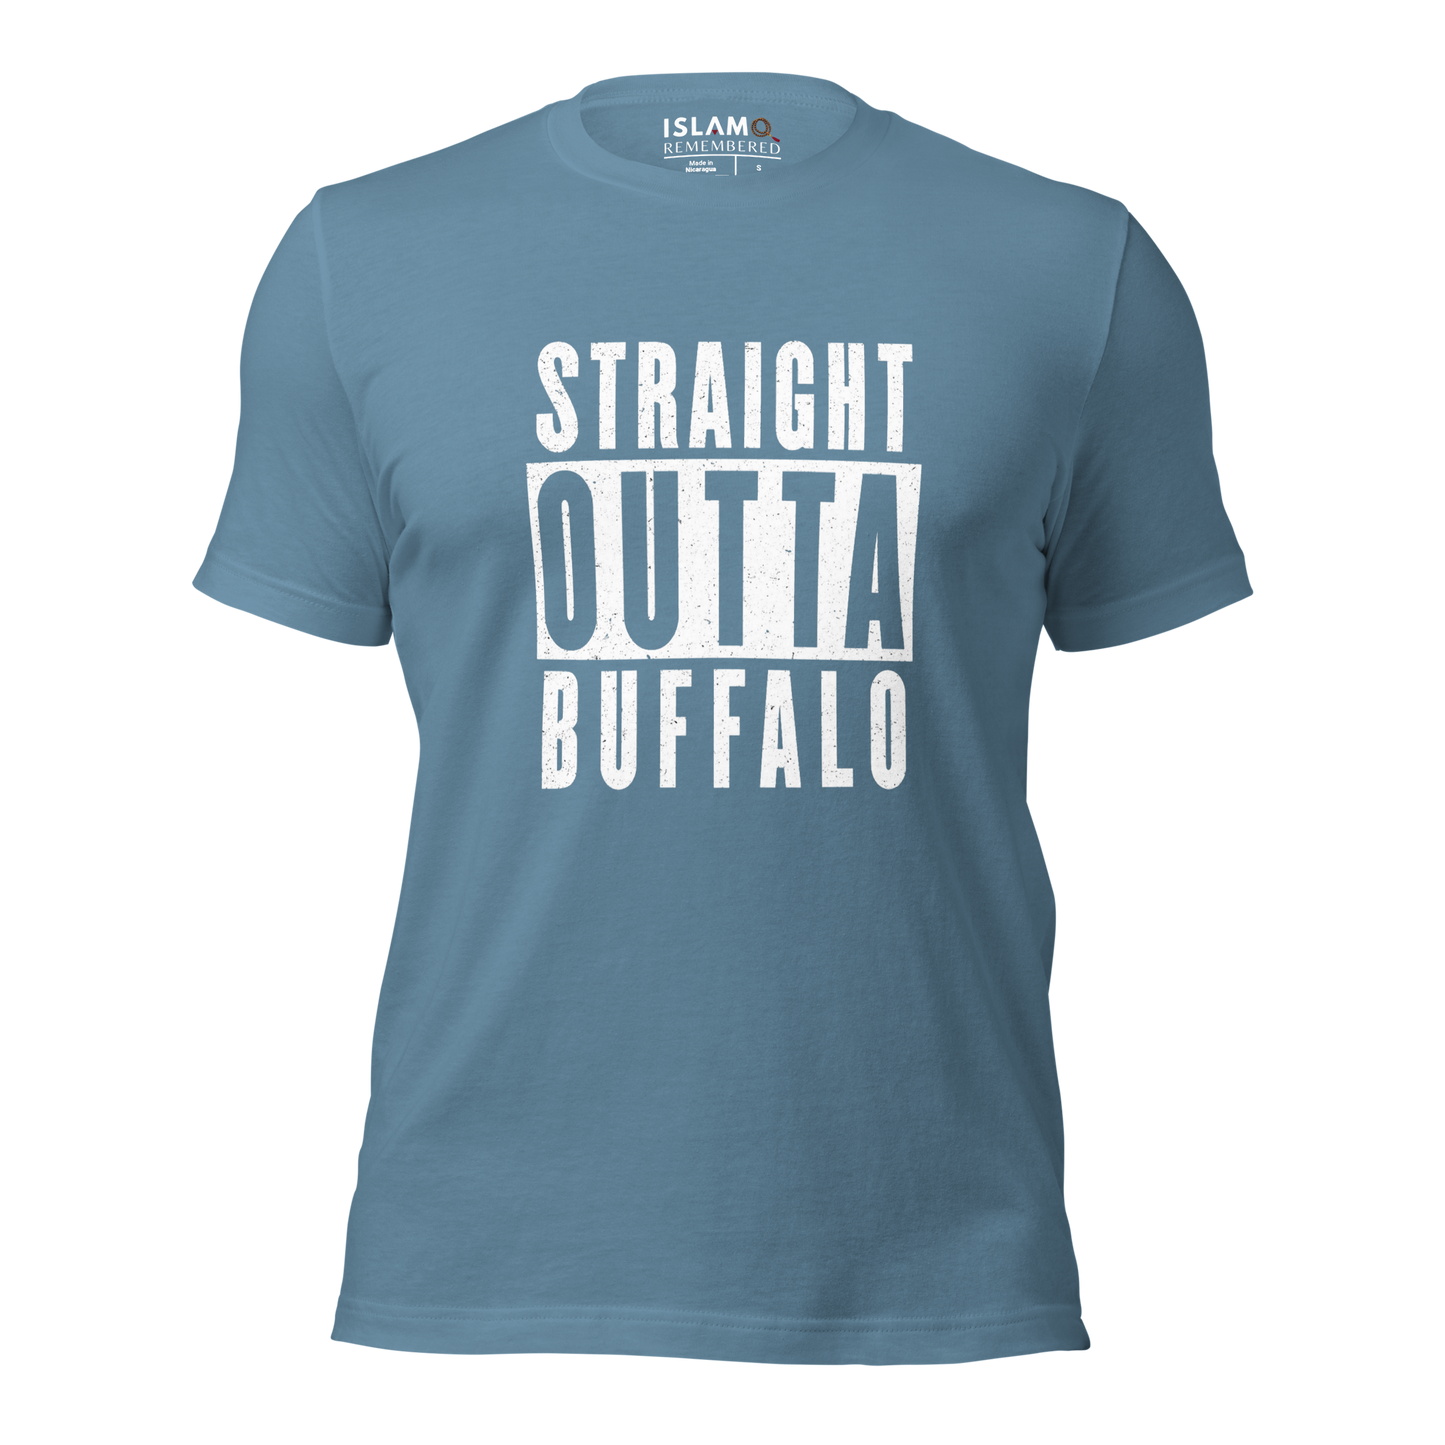 ADULT T-Shirt - STRAIGHT OUTTA BUFFALO